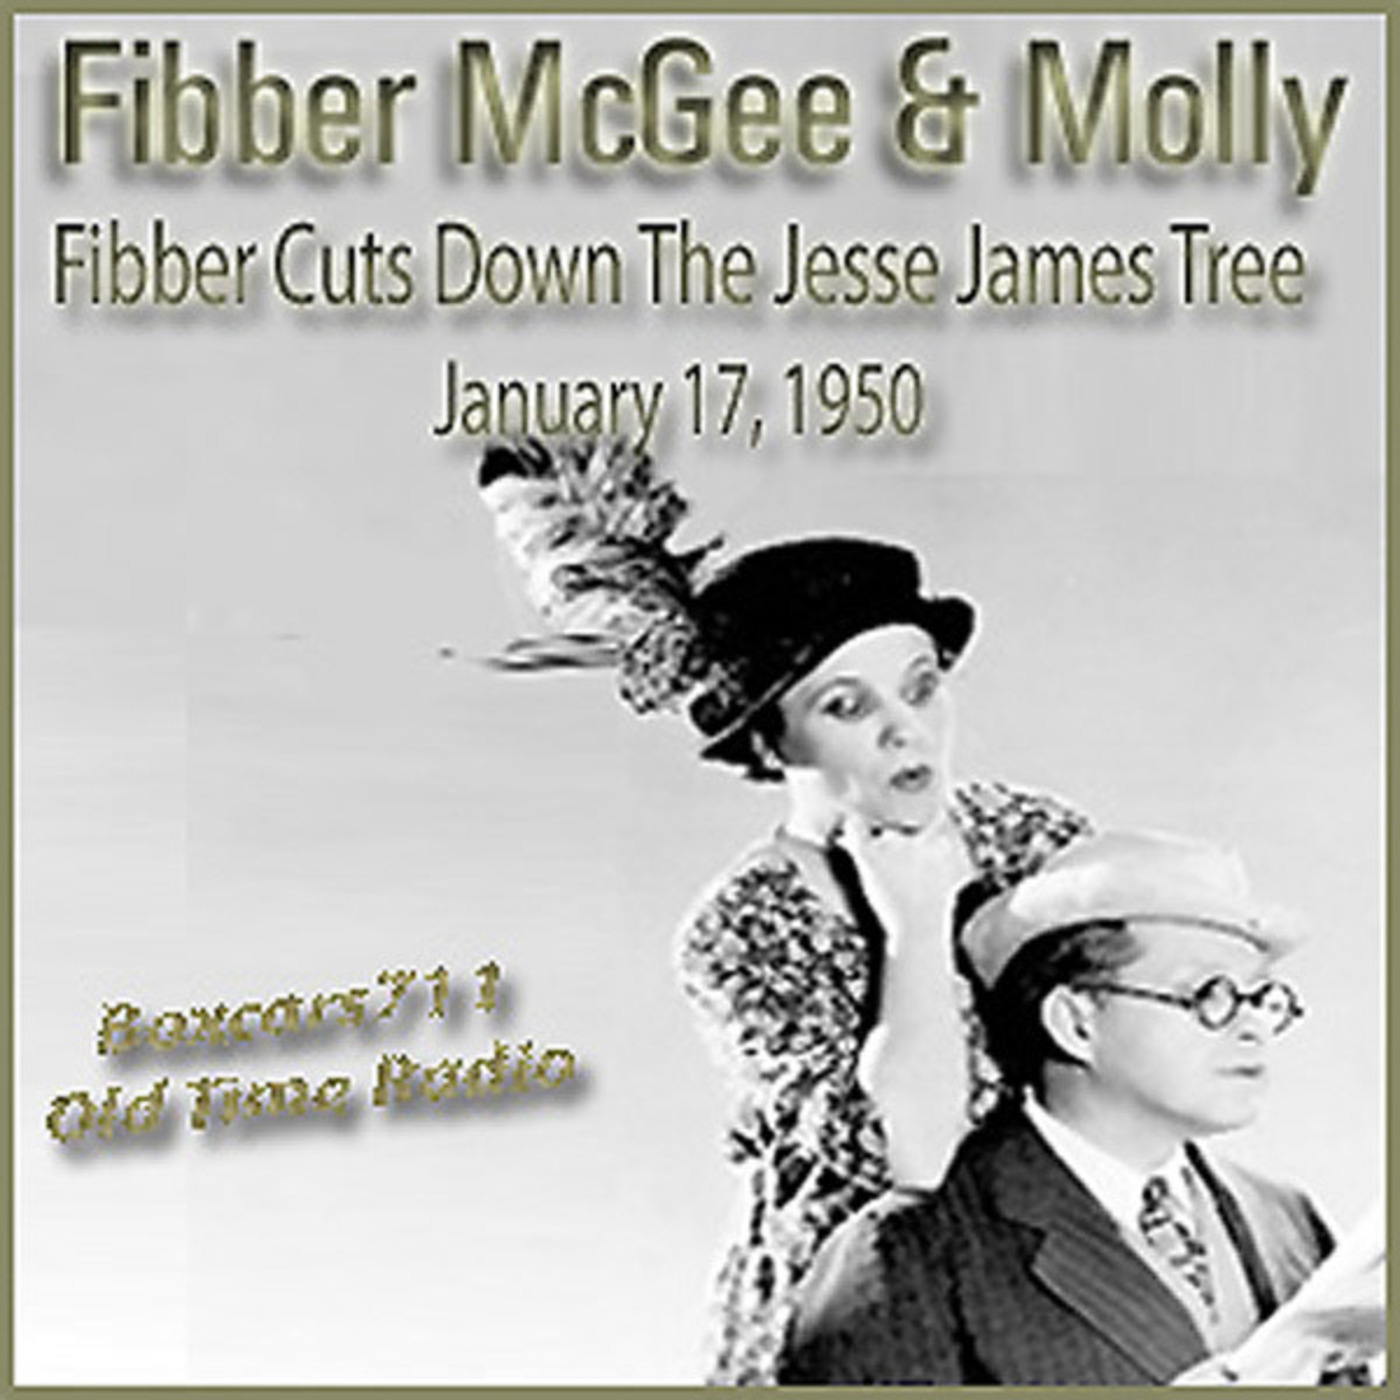 Episode 9653: Fibber McGee & Molly - 